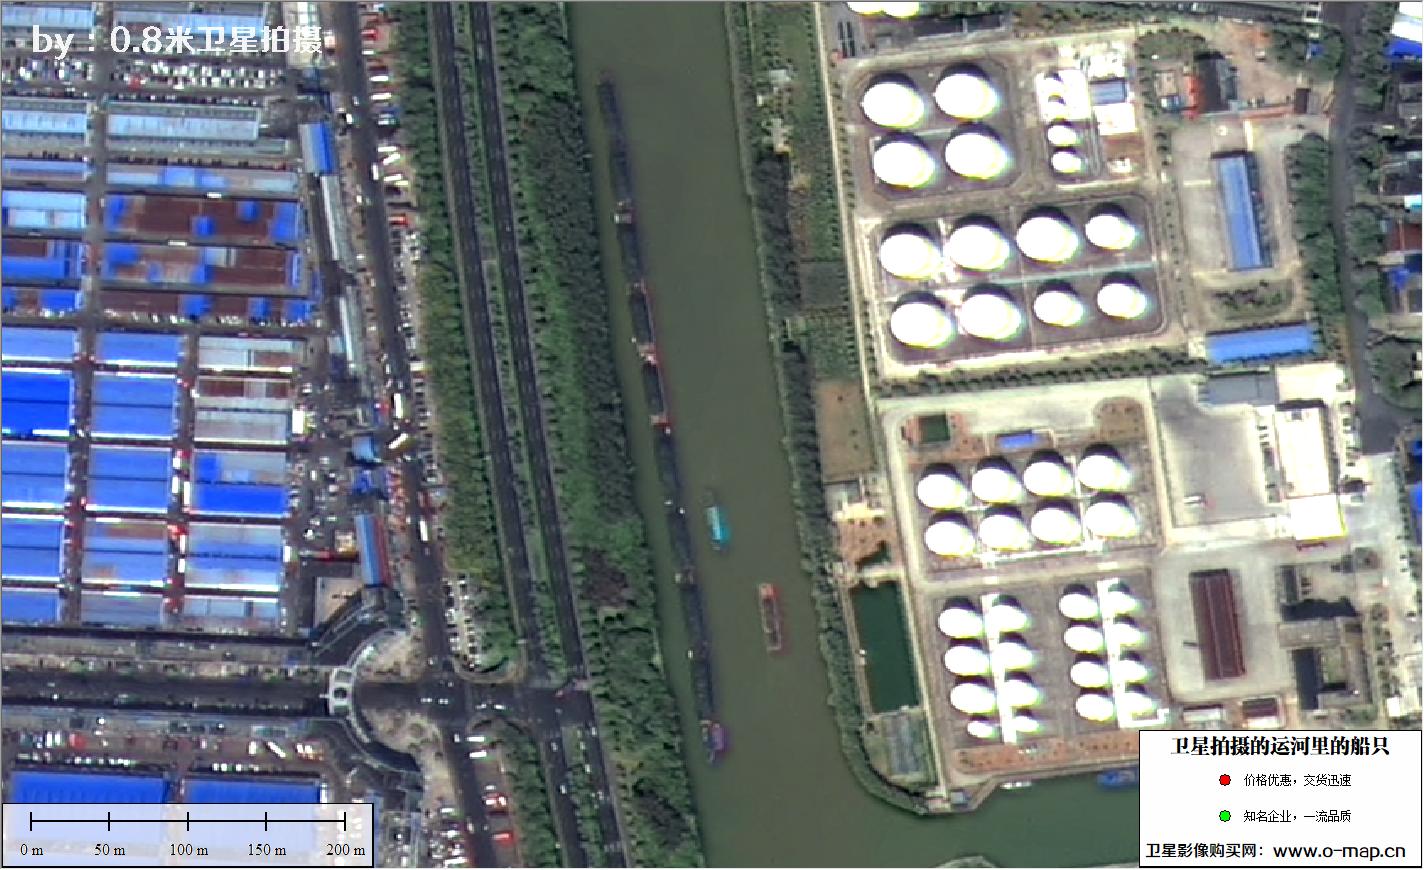 高分二号卫星拍摄的运河里的船只